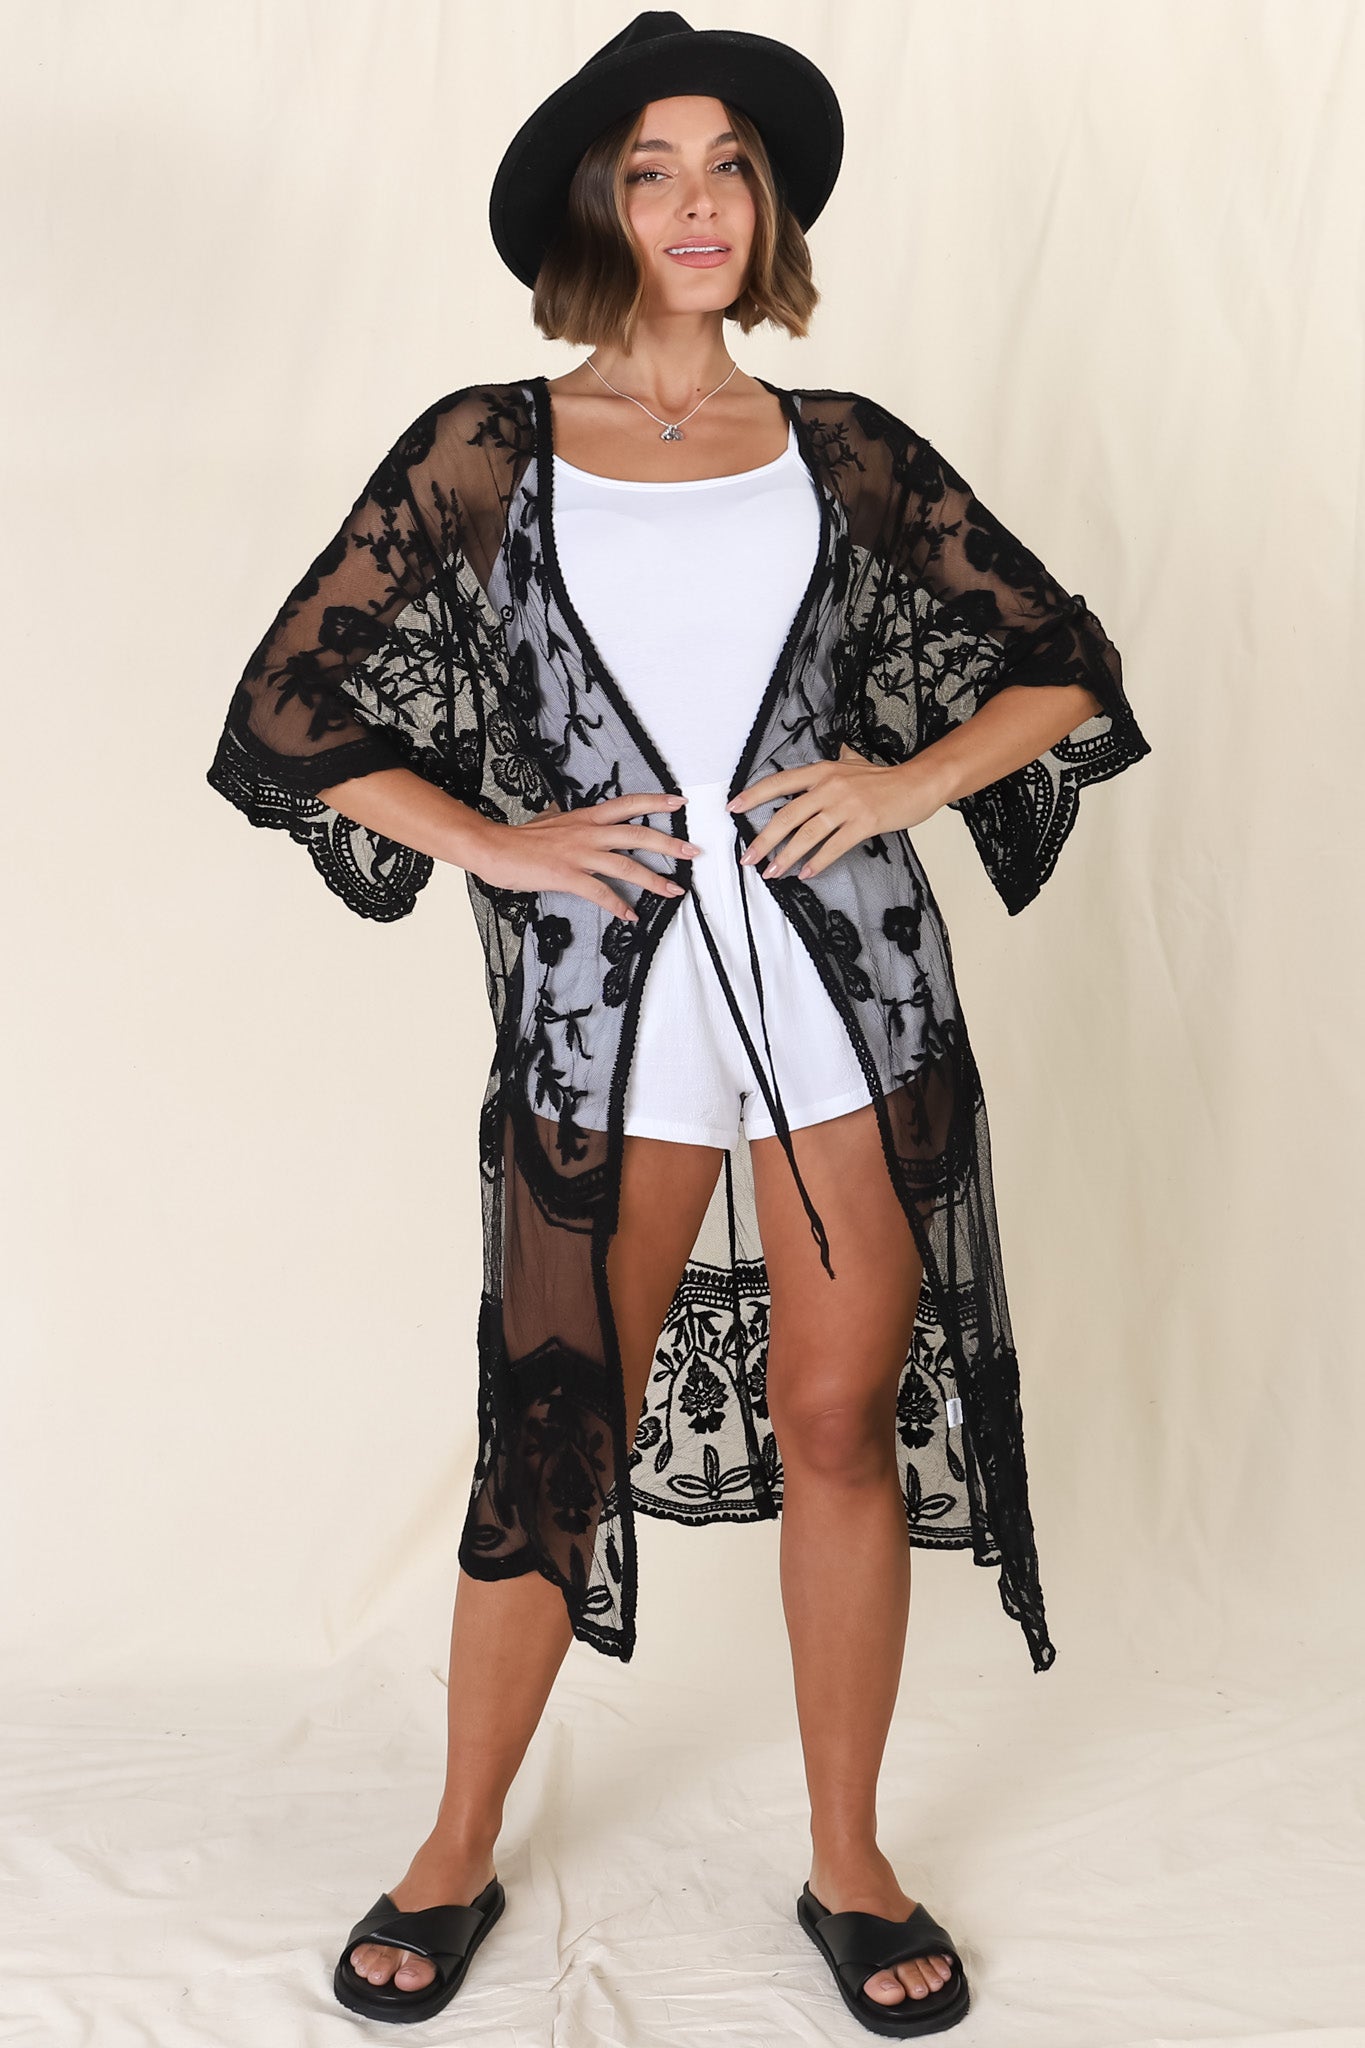 Haylo Kimono - Floral Lace Kimono with Scallop Hemline in Black